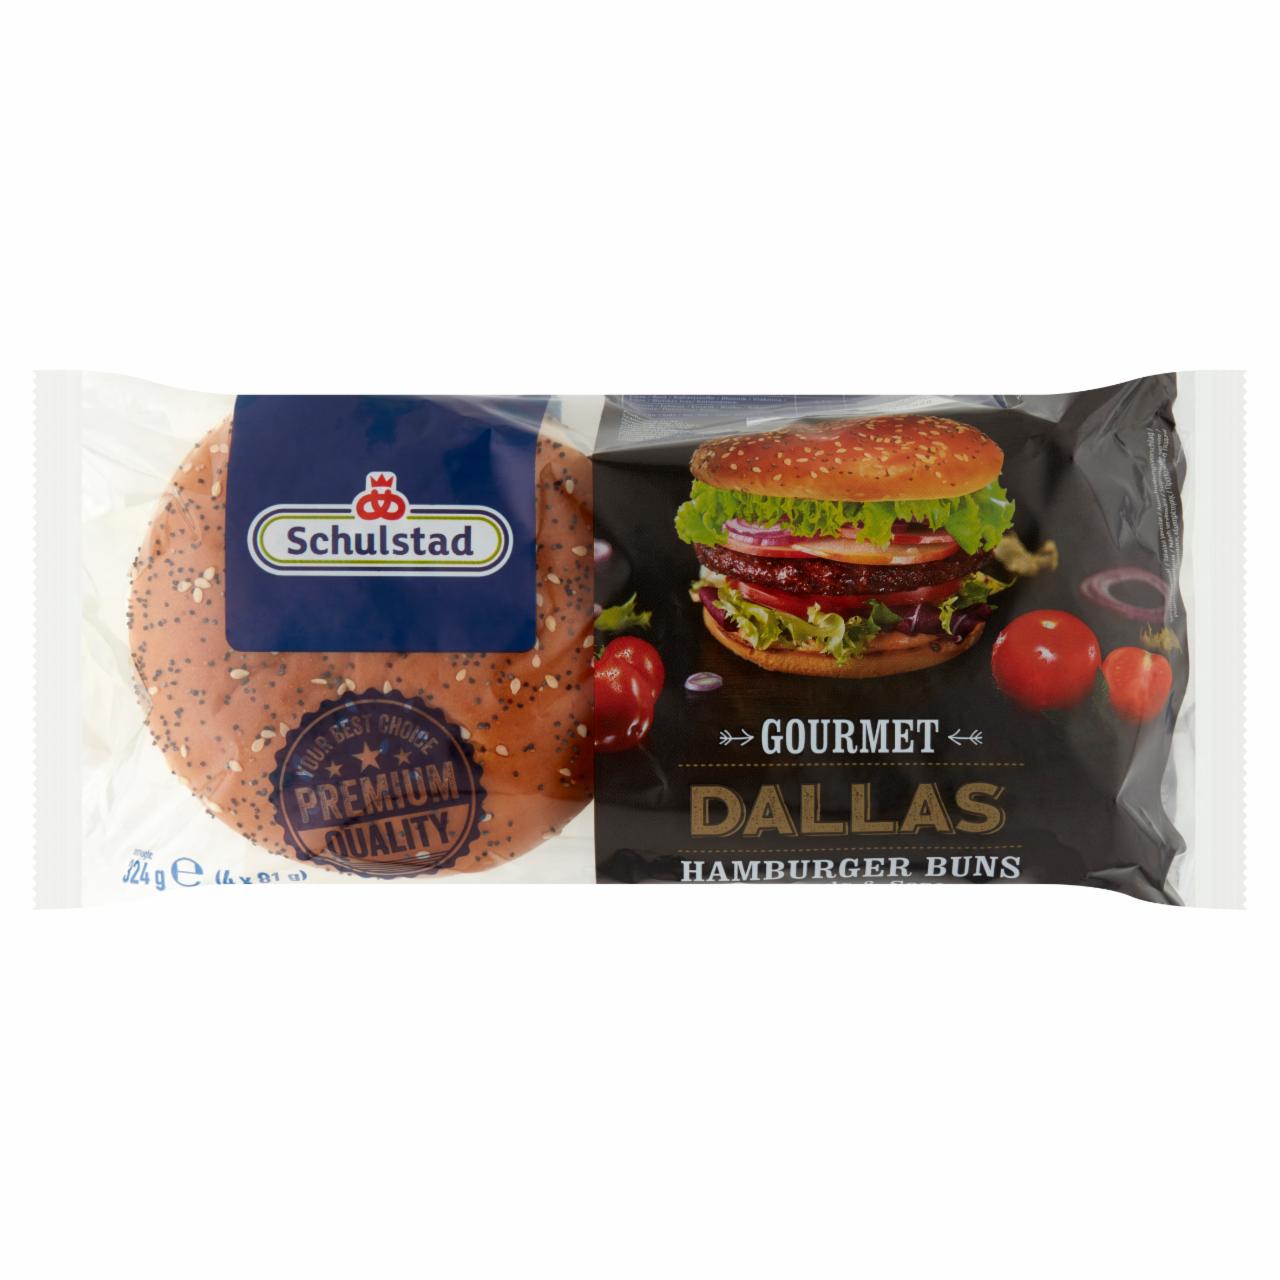 Képek - Schulstad Gourmet Dallas mákkal és szezámmaggal szórt hamburger zsemle 4 x 81 g (324 g)